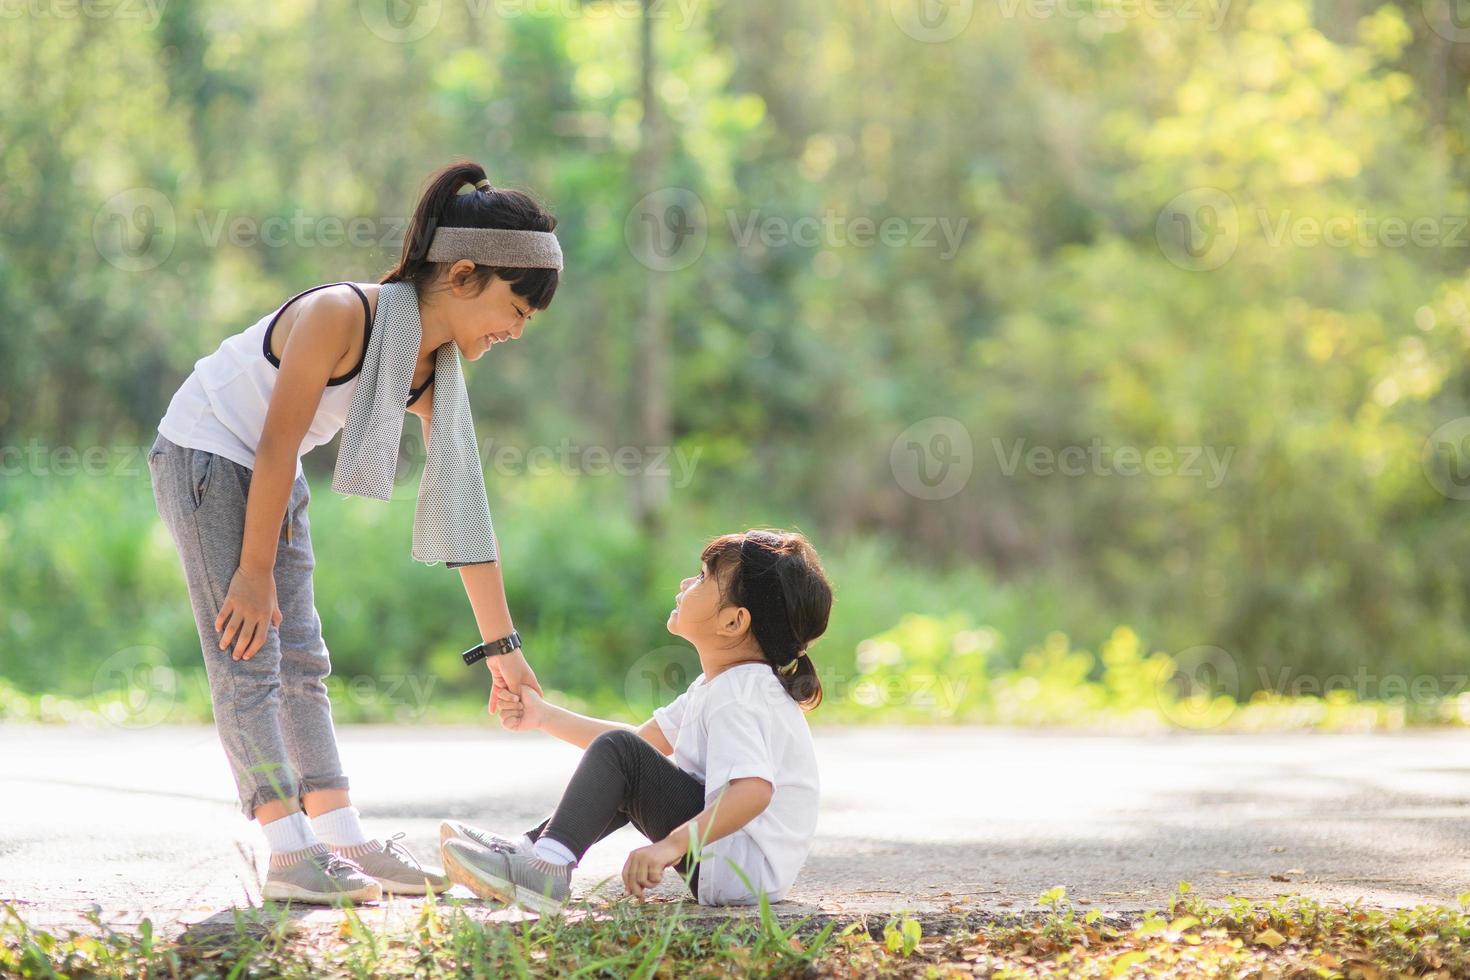 jolie fille asiatique donne la main pour aider sa soeur accident pendant la course photo